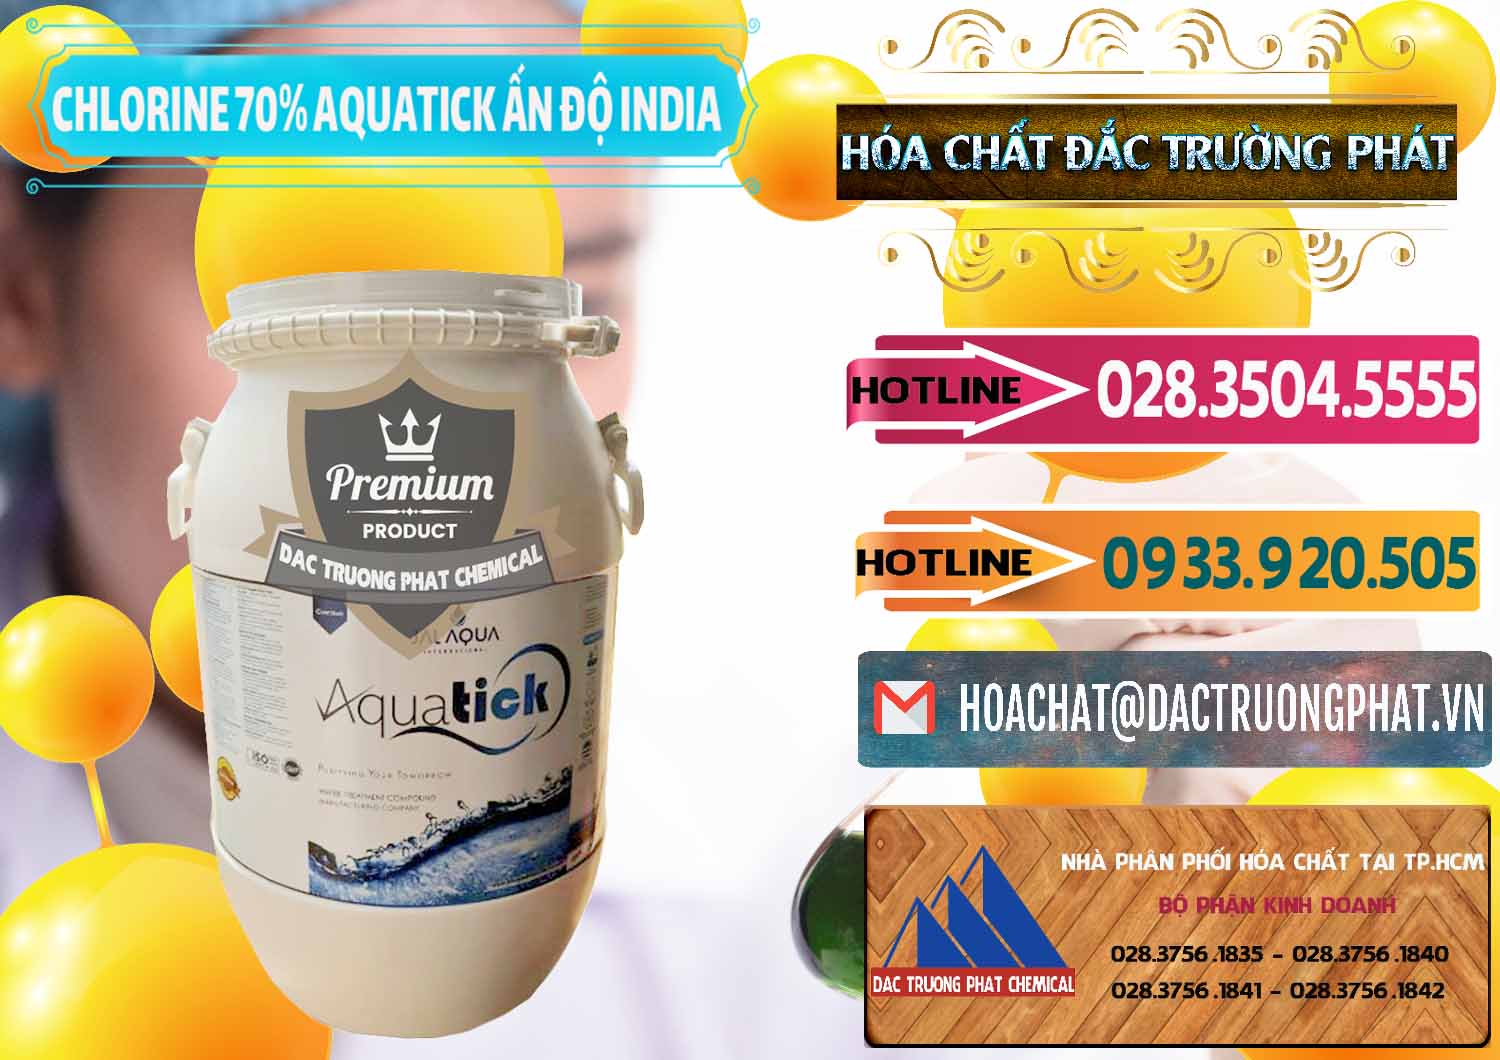 Nơi chuyên bán - cung ứng Chlorine – Clorin 70% Aquatick Jal Aqua Ấn Độ India - 0215 - Công ty chuyên nhập khẩu _ cung cấp hóa chất tại TP.HCM - dactruongphat.vn